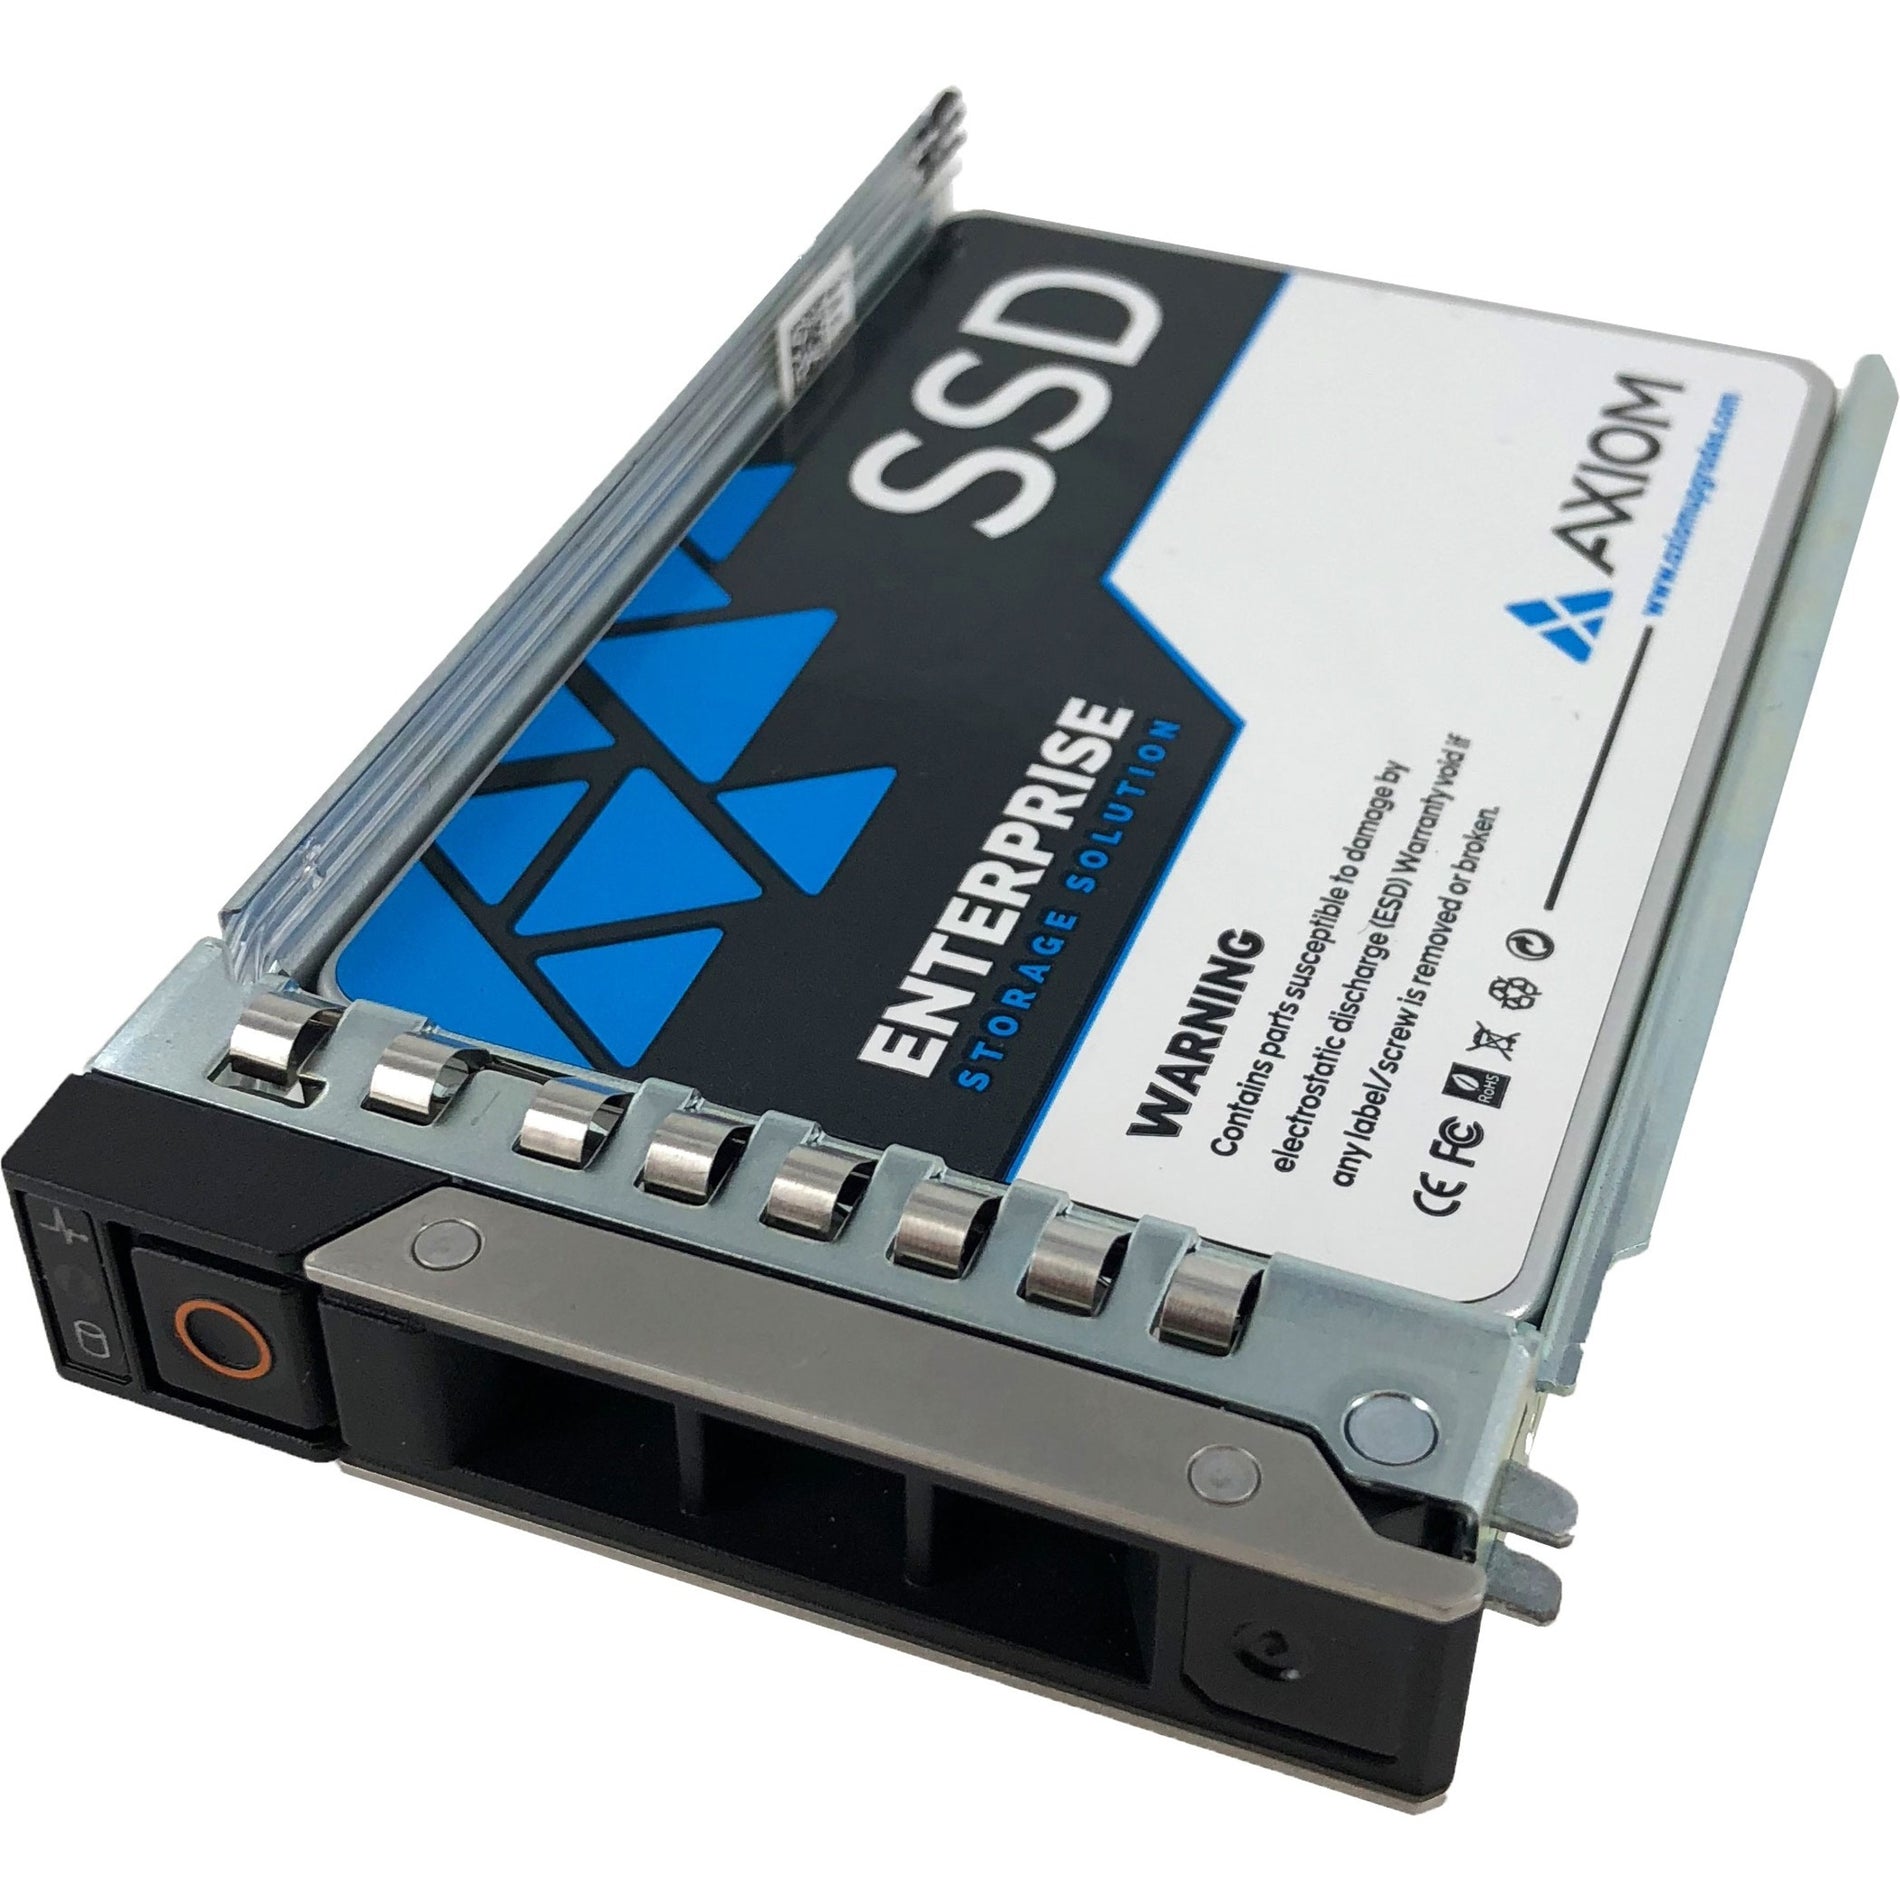 Axiom SSDEP45DX960-AX 960GB Enterprise Pro EP450 2.5-inch Hot-Swap SAS SSD For Dell, 5 Year Warranty, 1711 TB Endurance